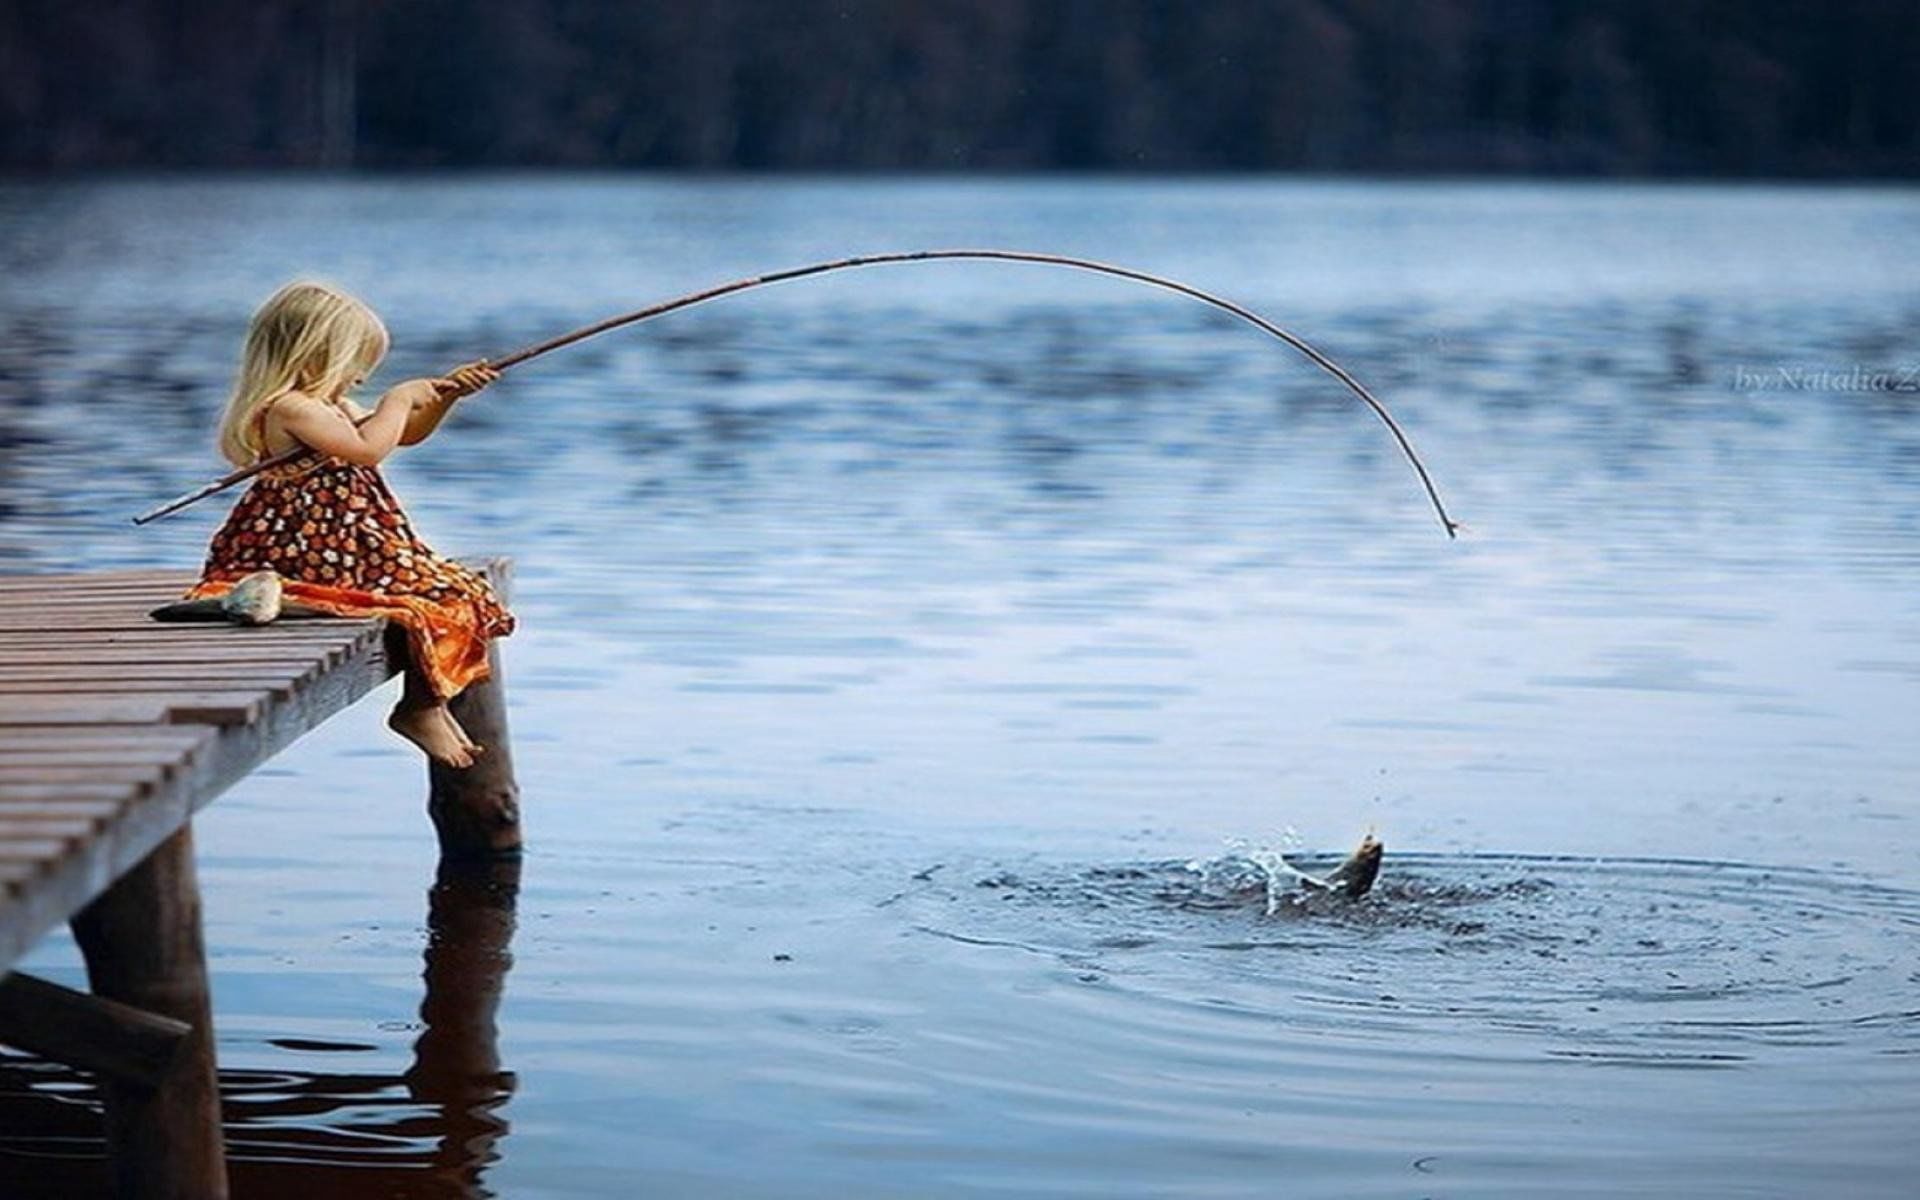 Удочка для детей. Женщина с удочкой. Озеро с удочкой. Рыбак с удочкой. Сон ловить поймать рыбу